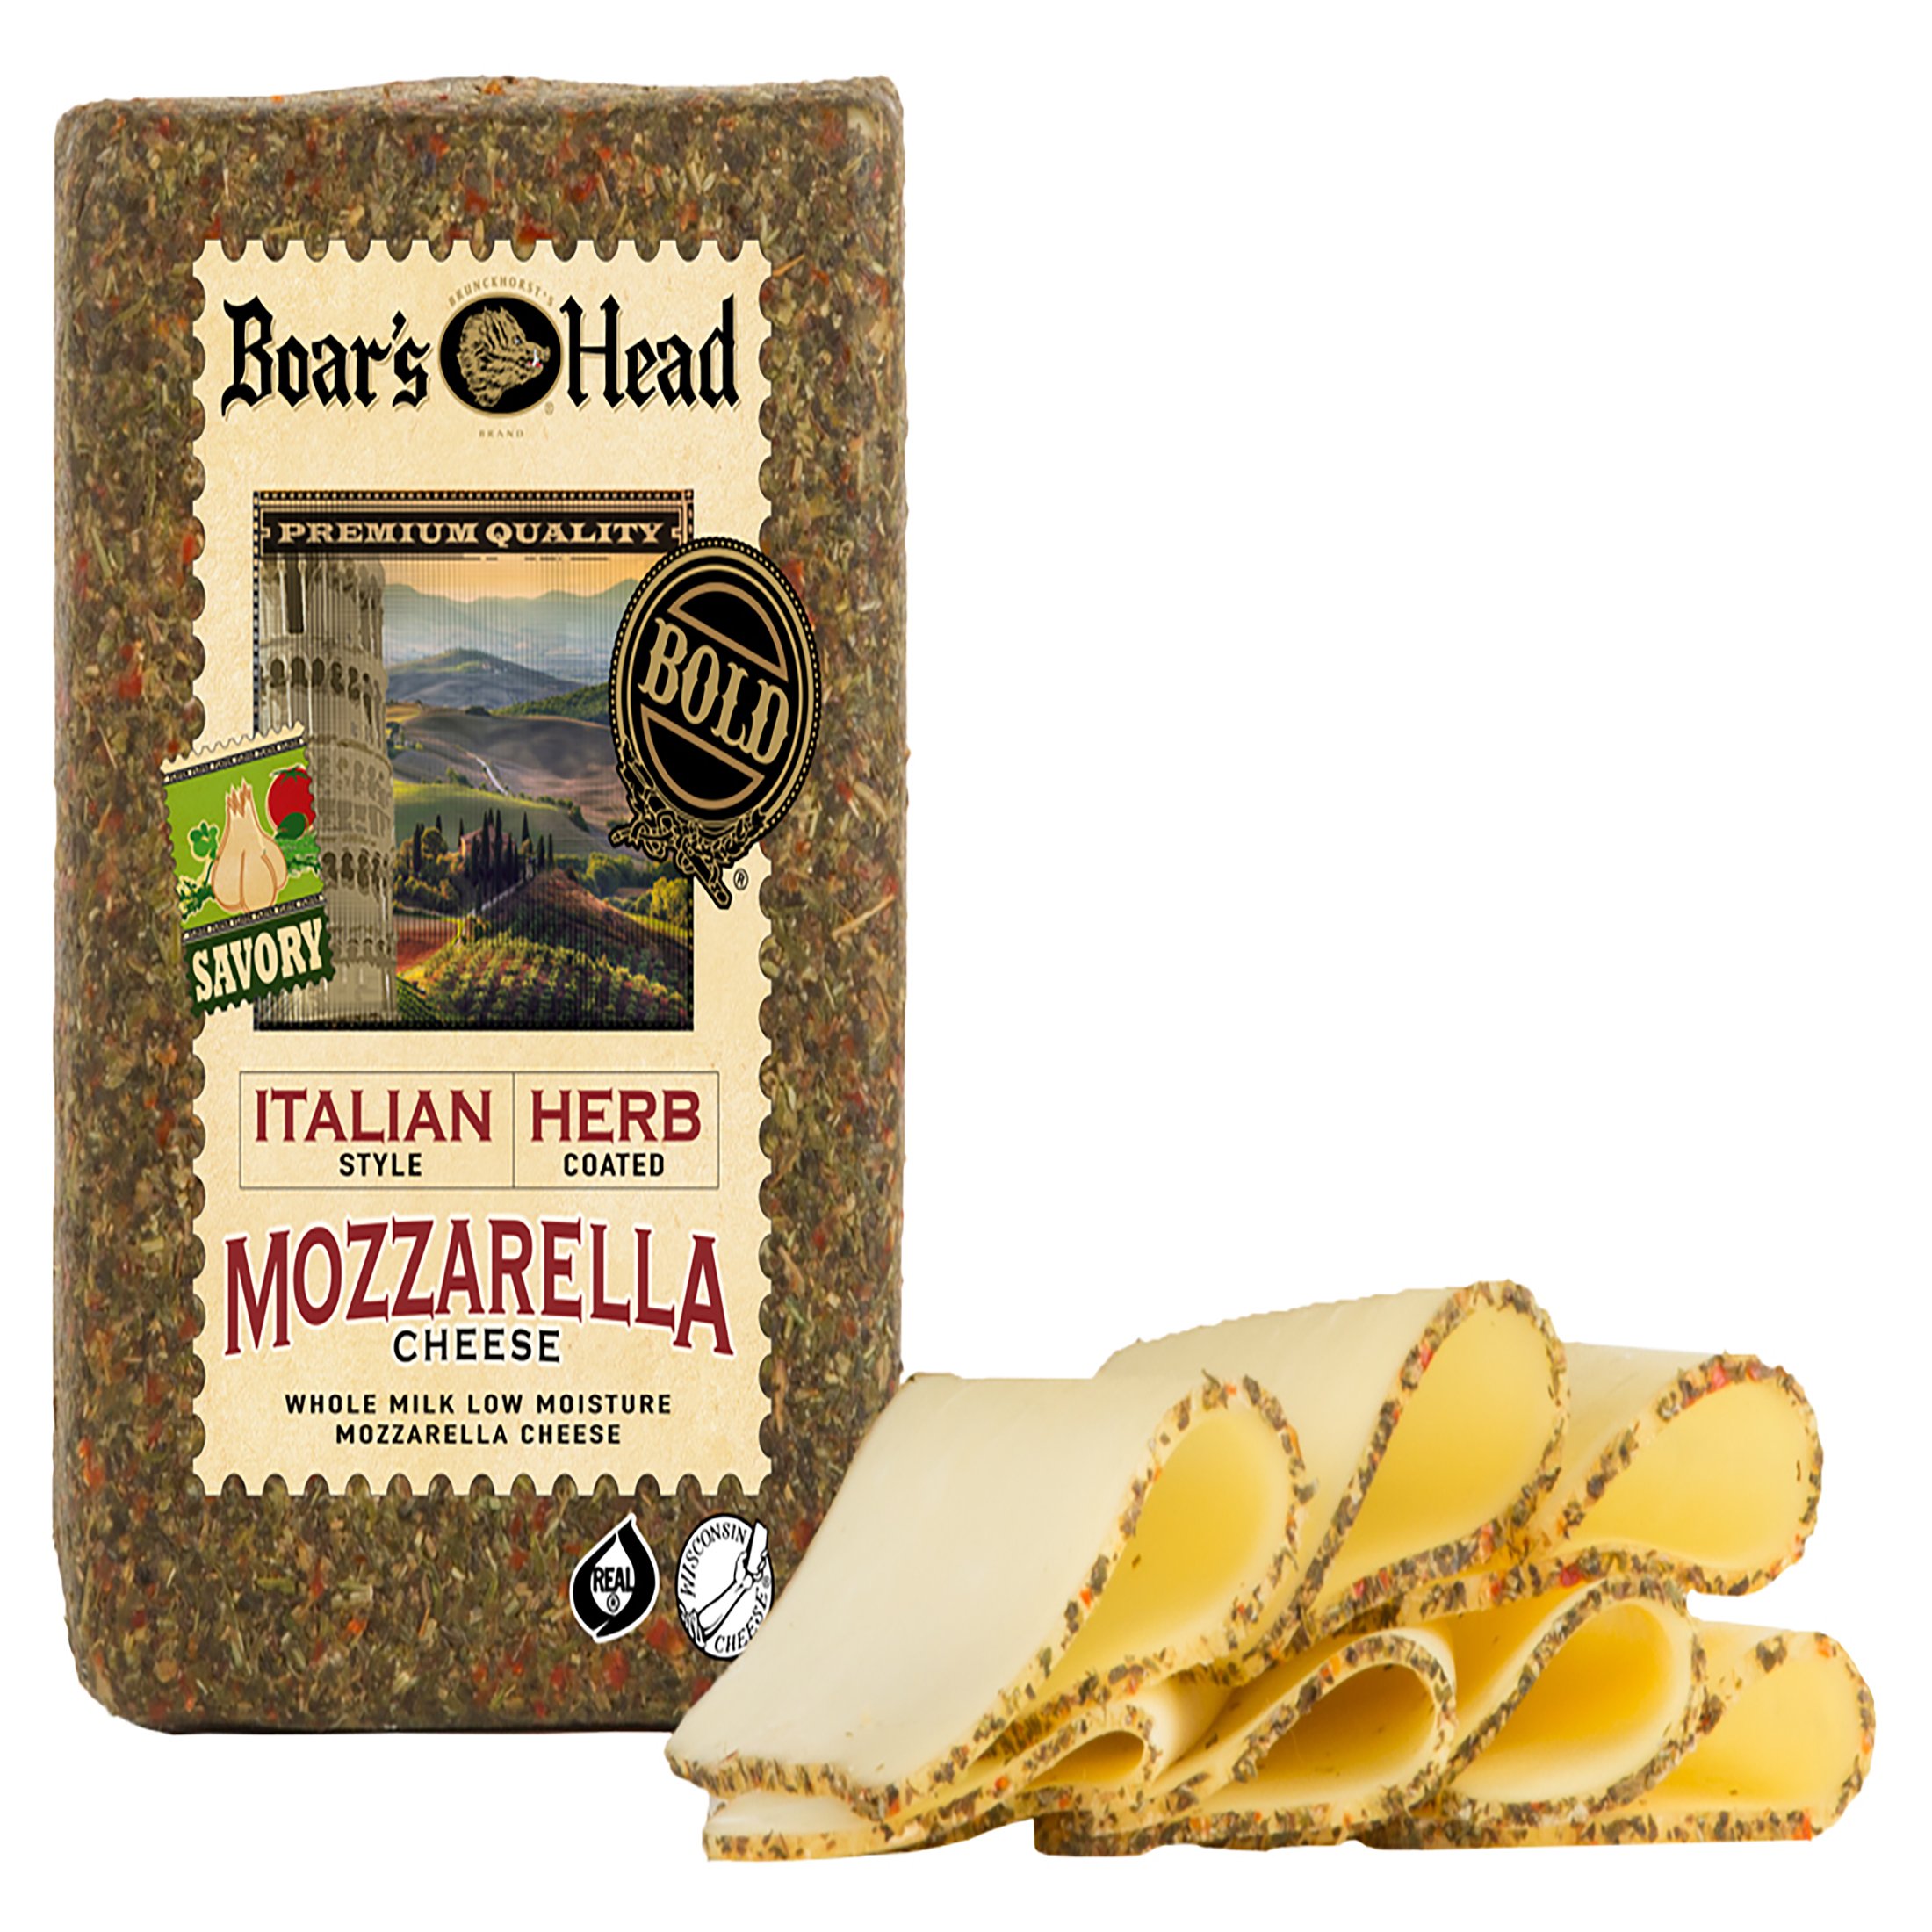 Boar's Head Deli-Sliced Bold Italian Herb Mozzarella Cheese - Shop Cheese  at H-E-B